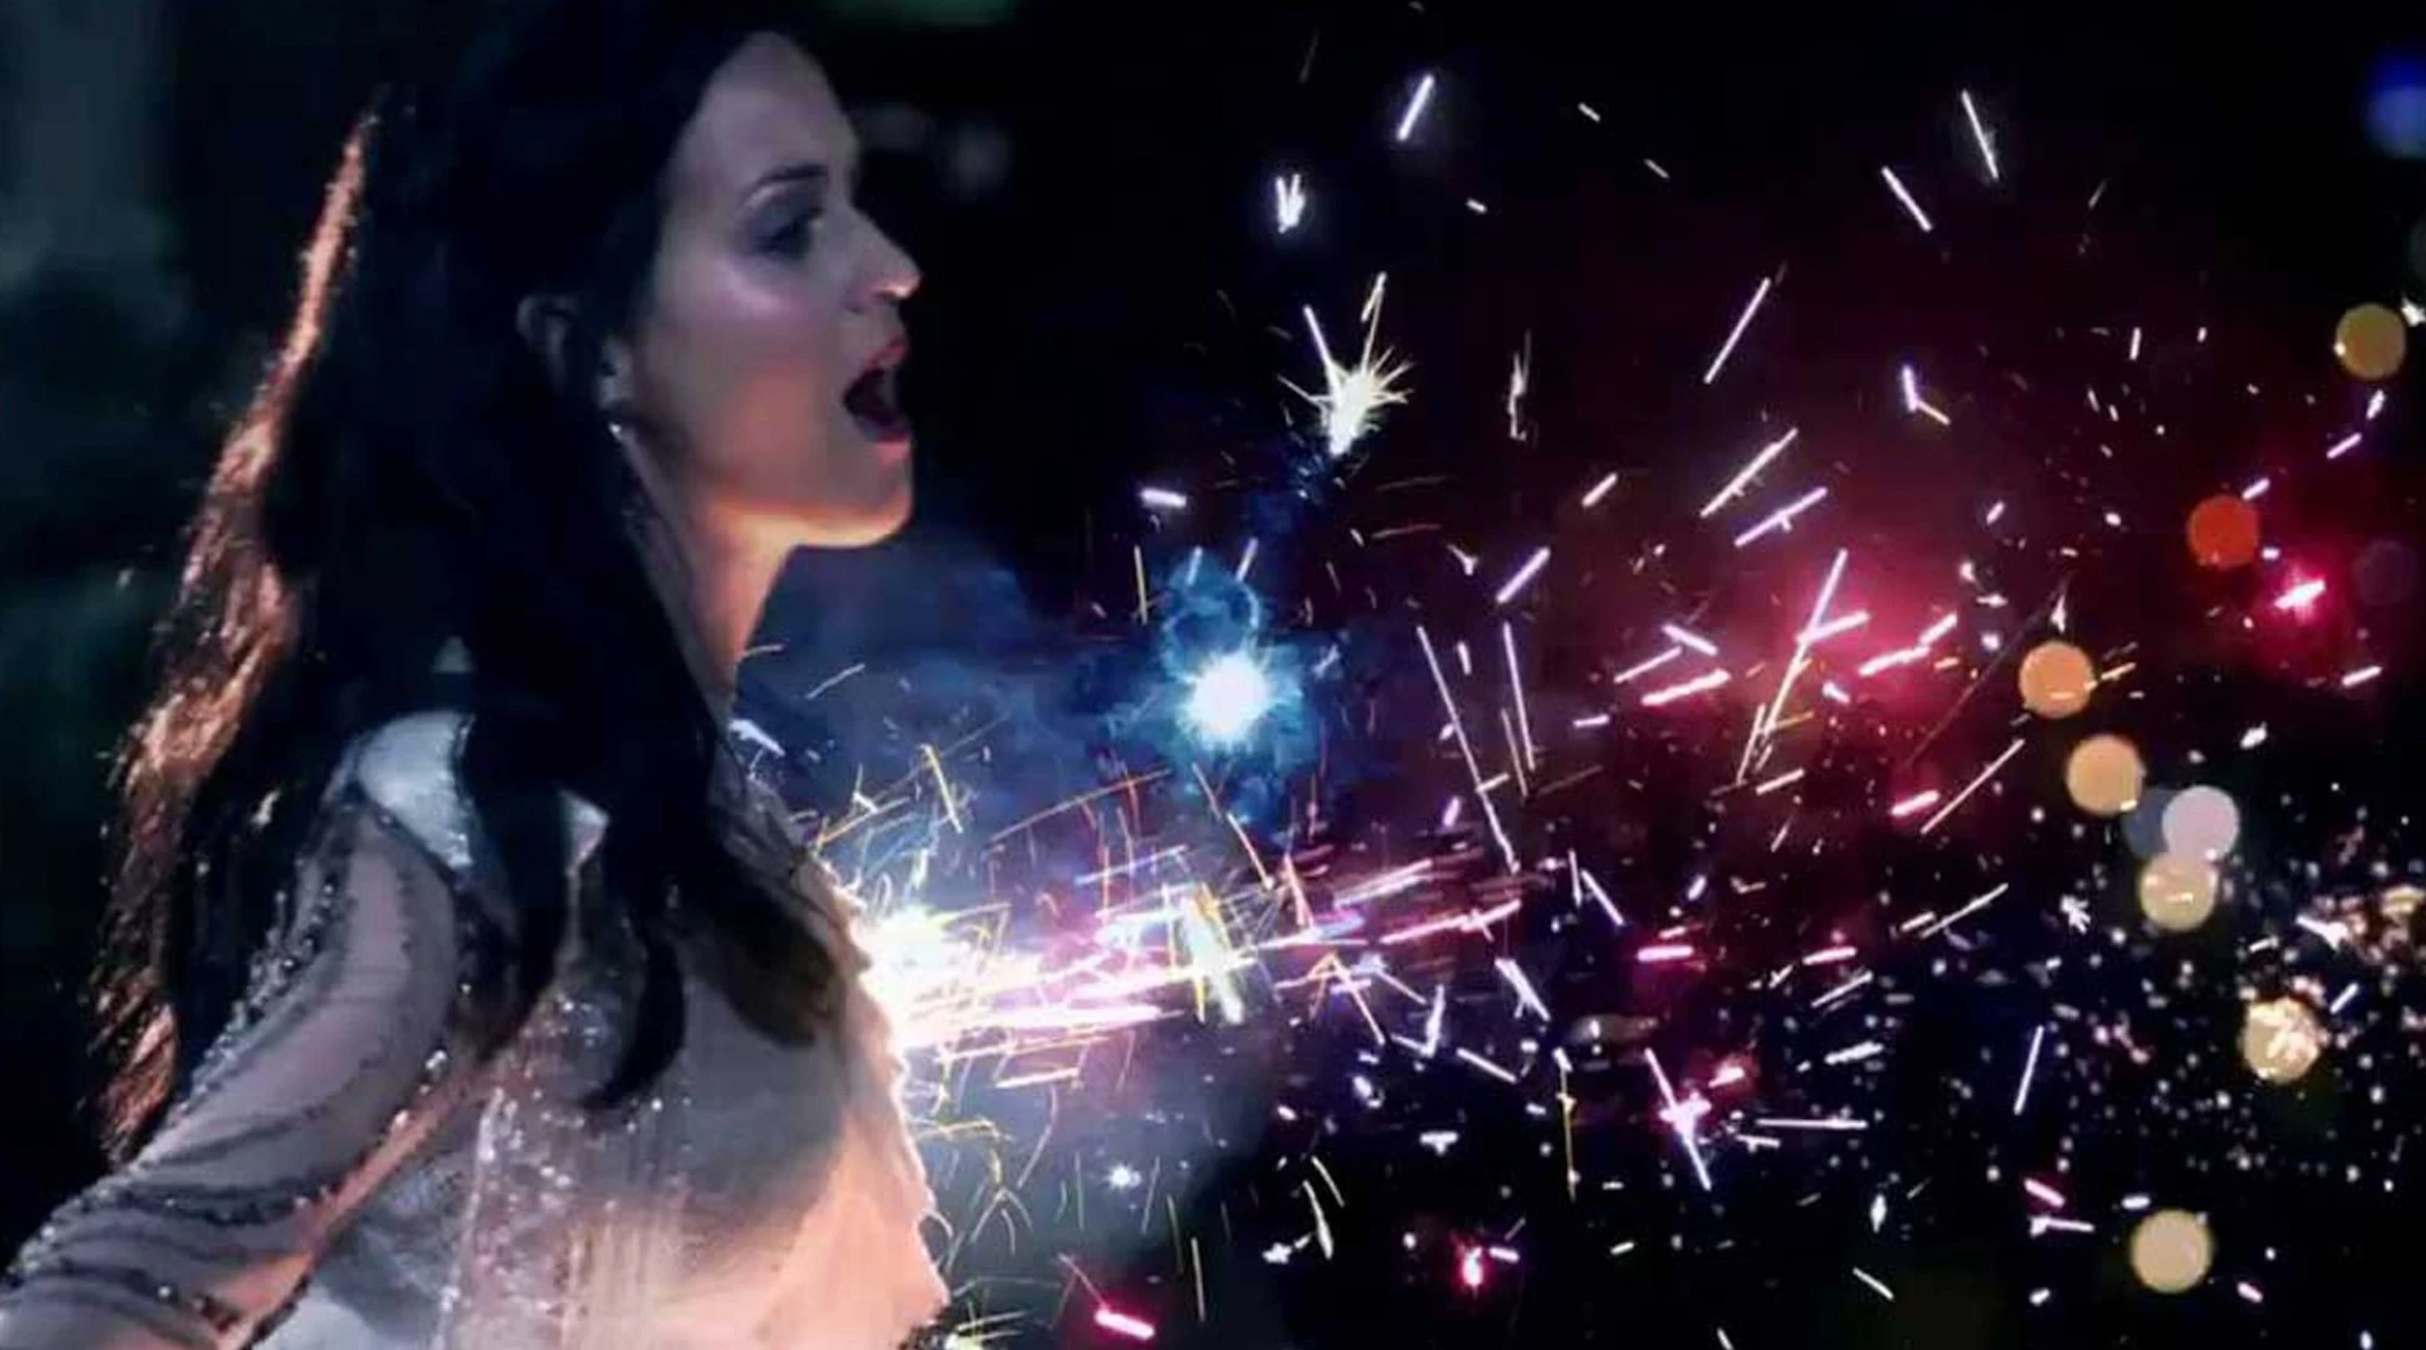 Firework Katy Perry